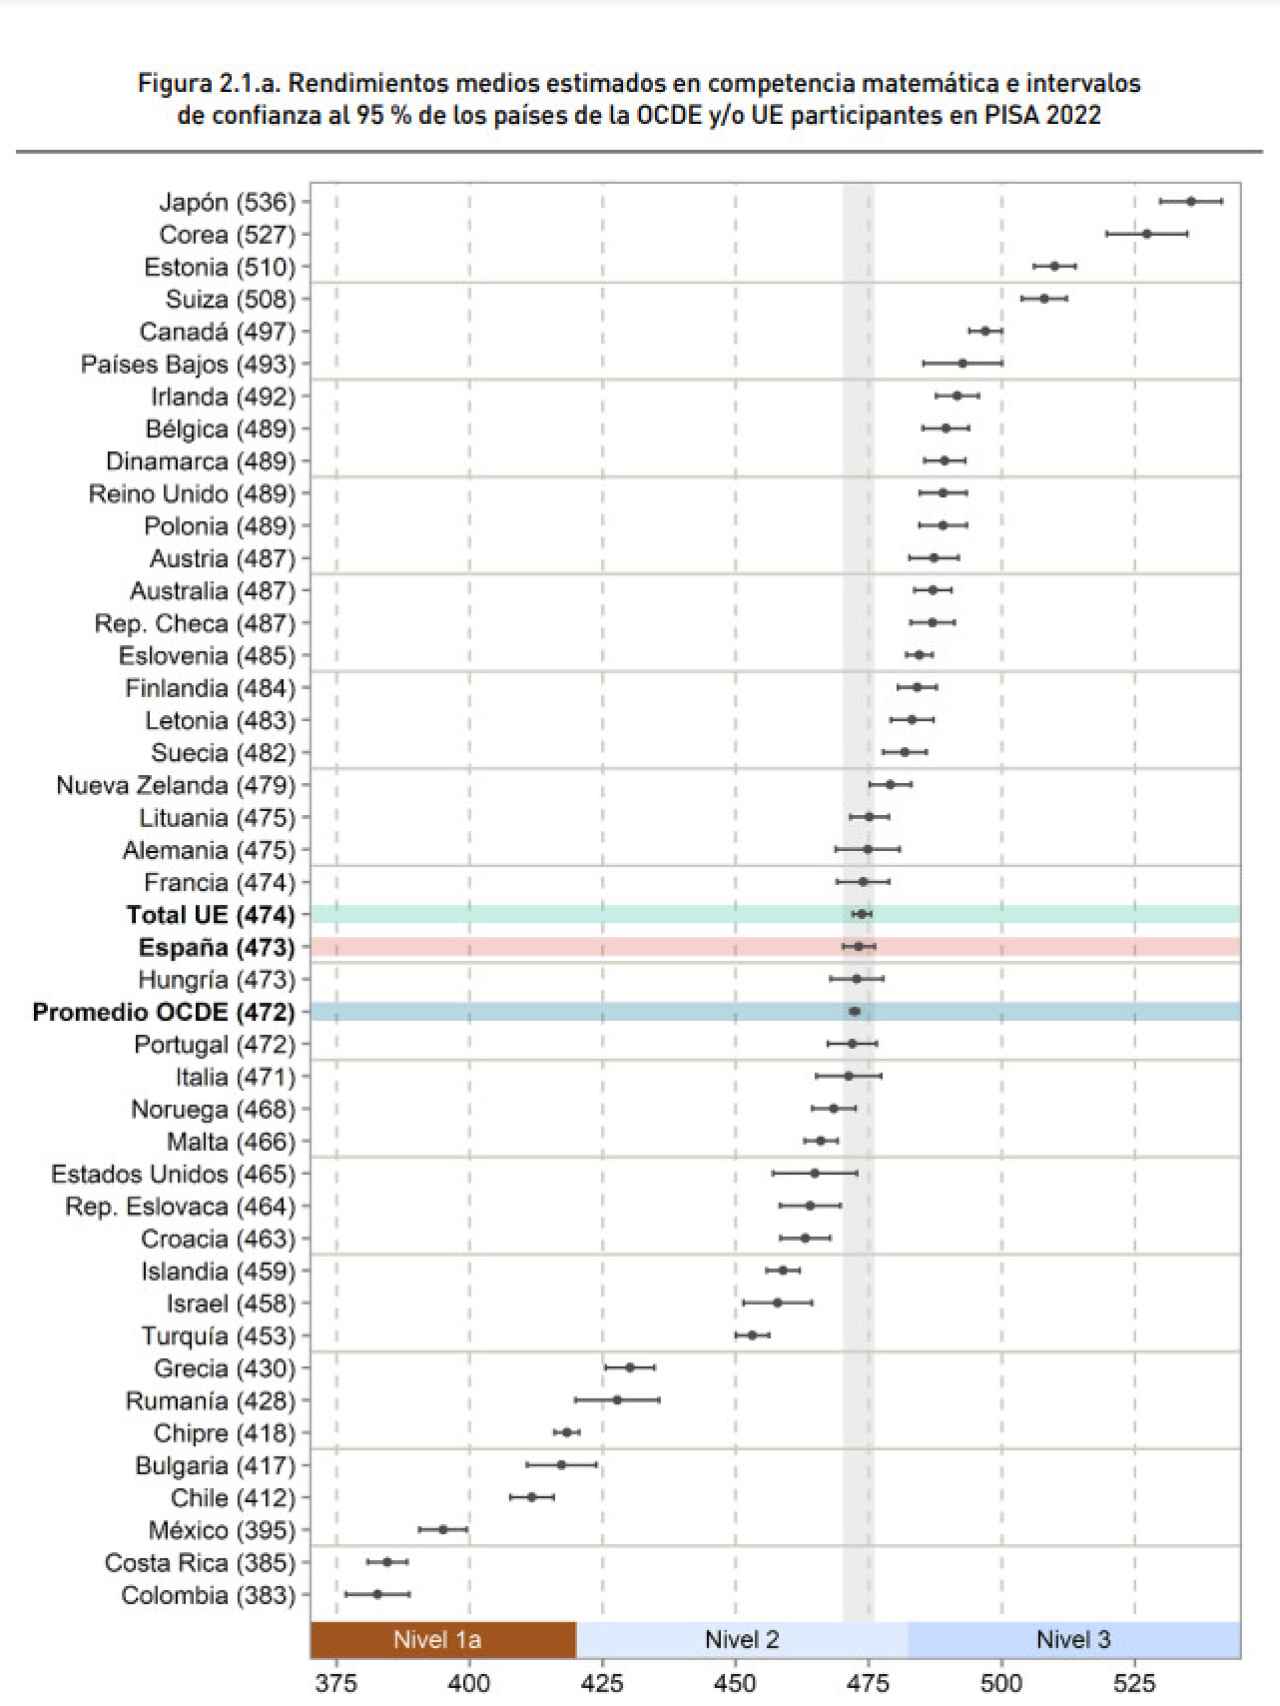 Los rendimientos medios en Matemáticas de los países de la OCDE y la UE, según el informe PISA 2022.